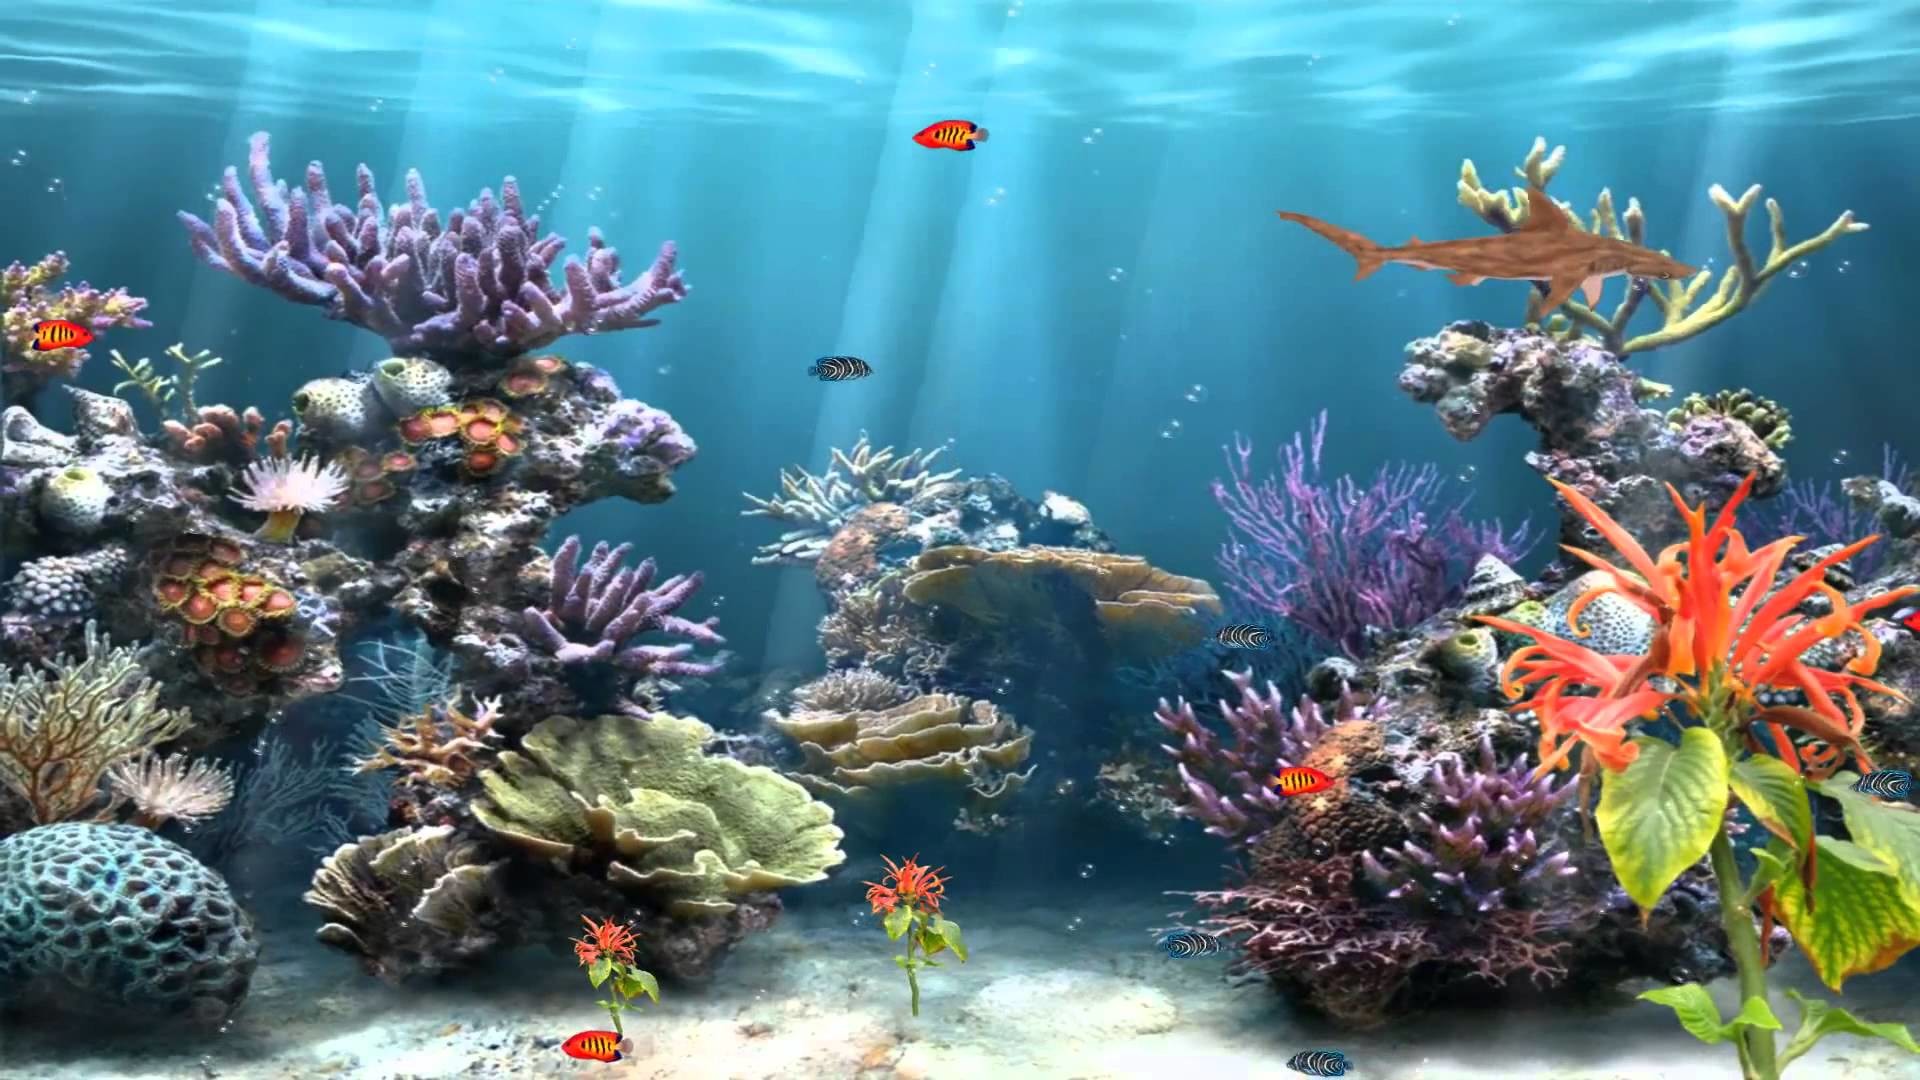 1920x1080 Freshwater Fish Wallpaper - WallpaperSafari Freshwater Aquarium Live  Wallpaper: Underwater aquarium wallpaper .